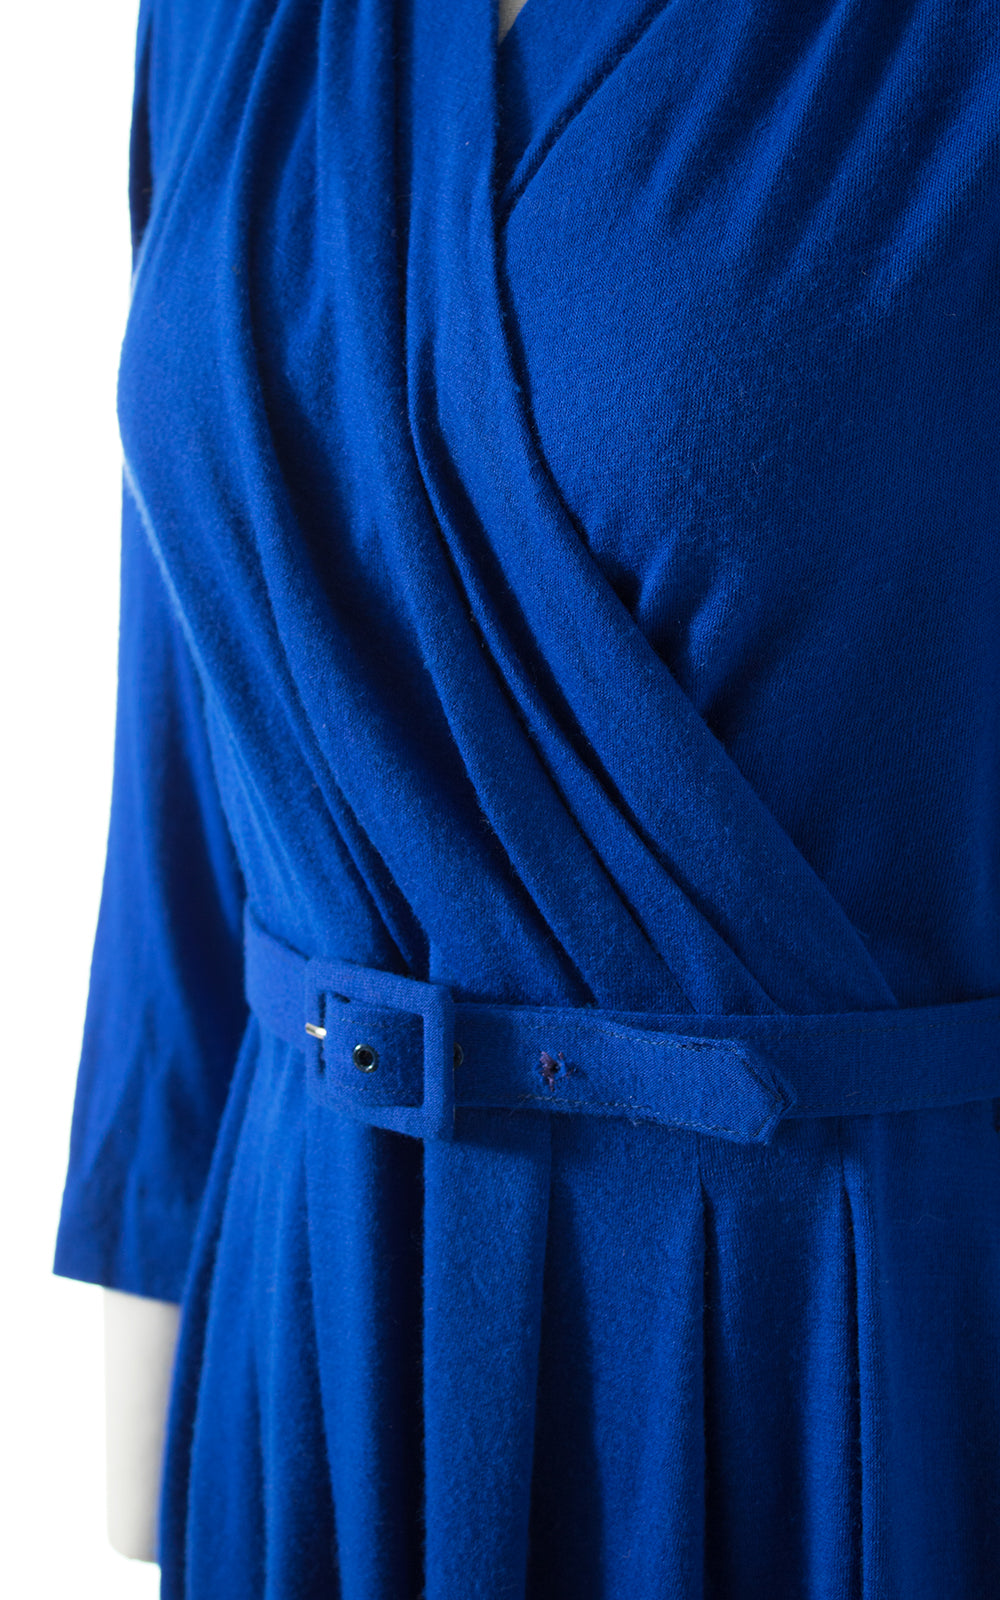 1950s Blue Wool Jersey Dress